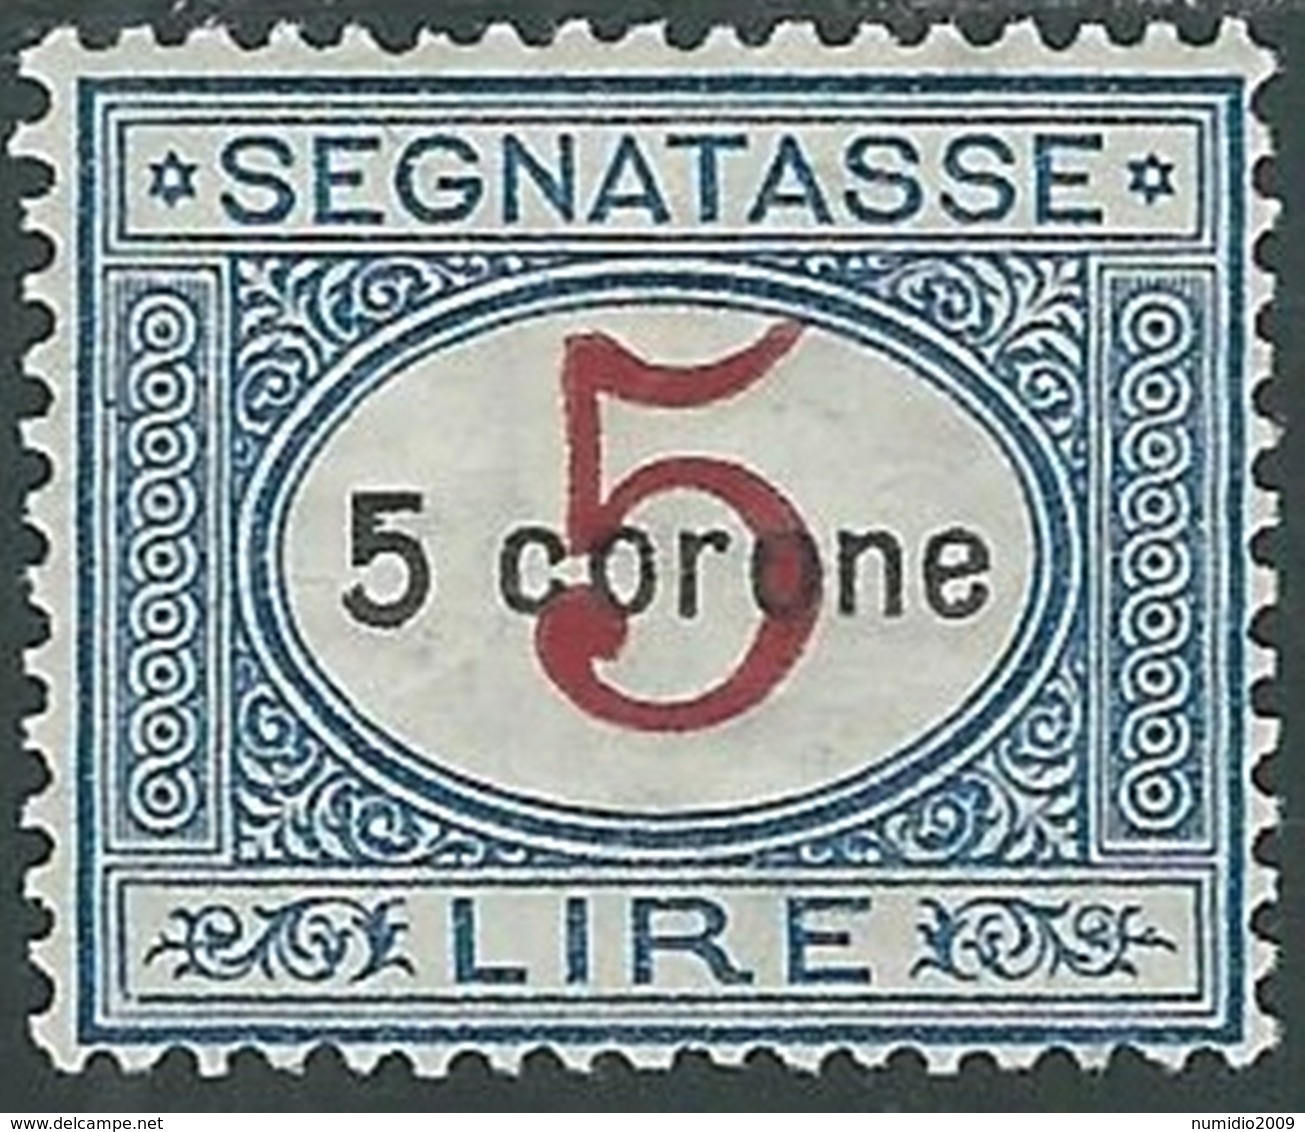 1922 DALMAZIA SEGNATASSE 5 COR MH * - RB8-9 - Dalmatien